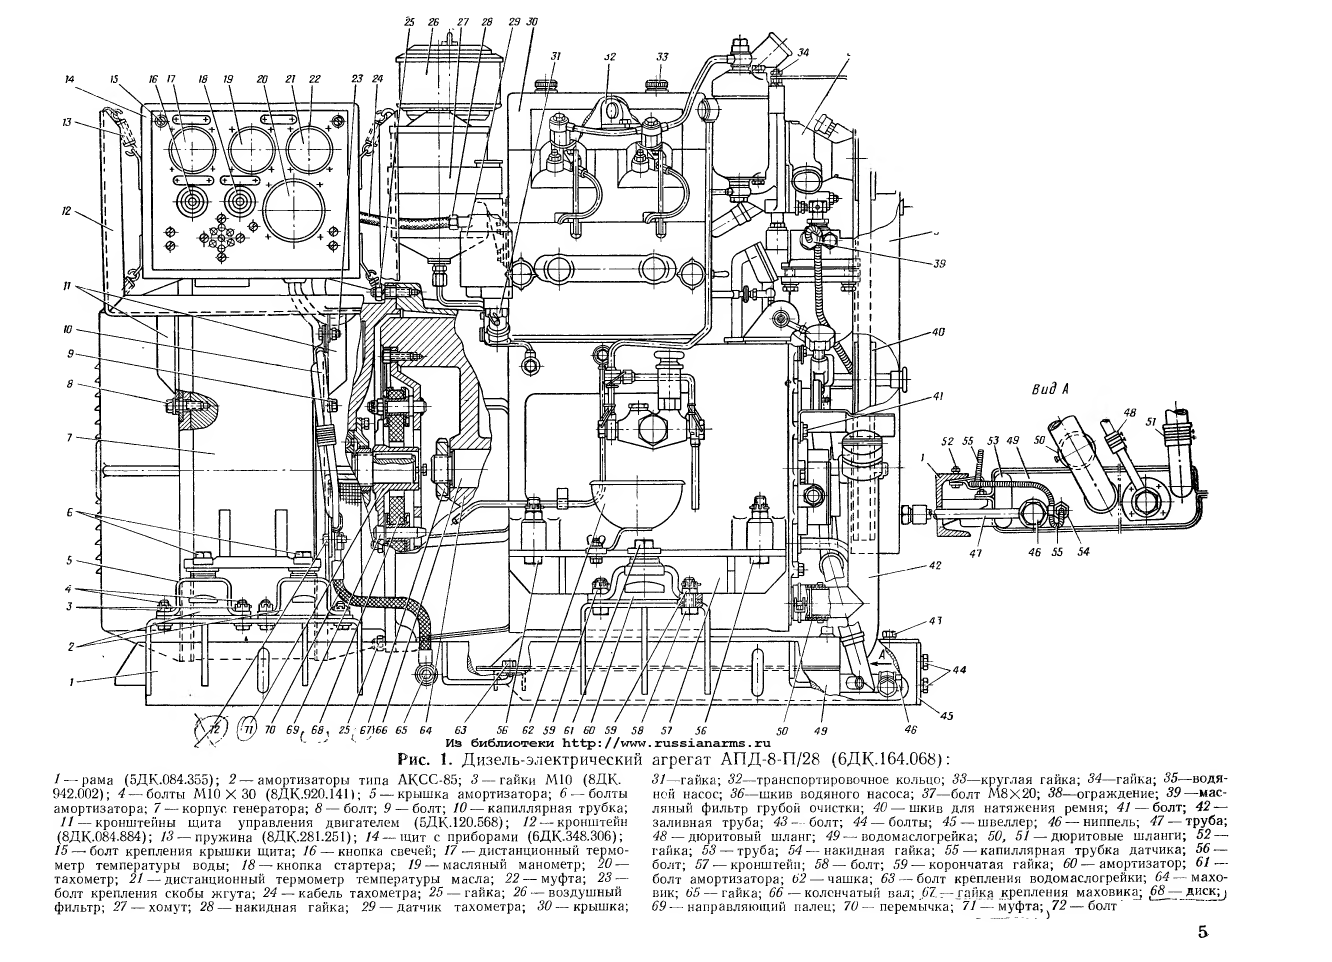 АПД-8-П_28. Дизель-электрический агрегат АПД-8-П_28. Руководство по ремонту. Альбом рисунков. 1964